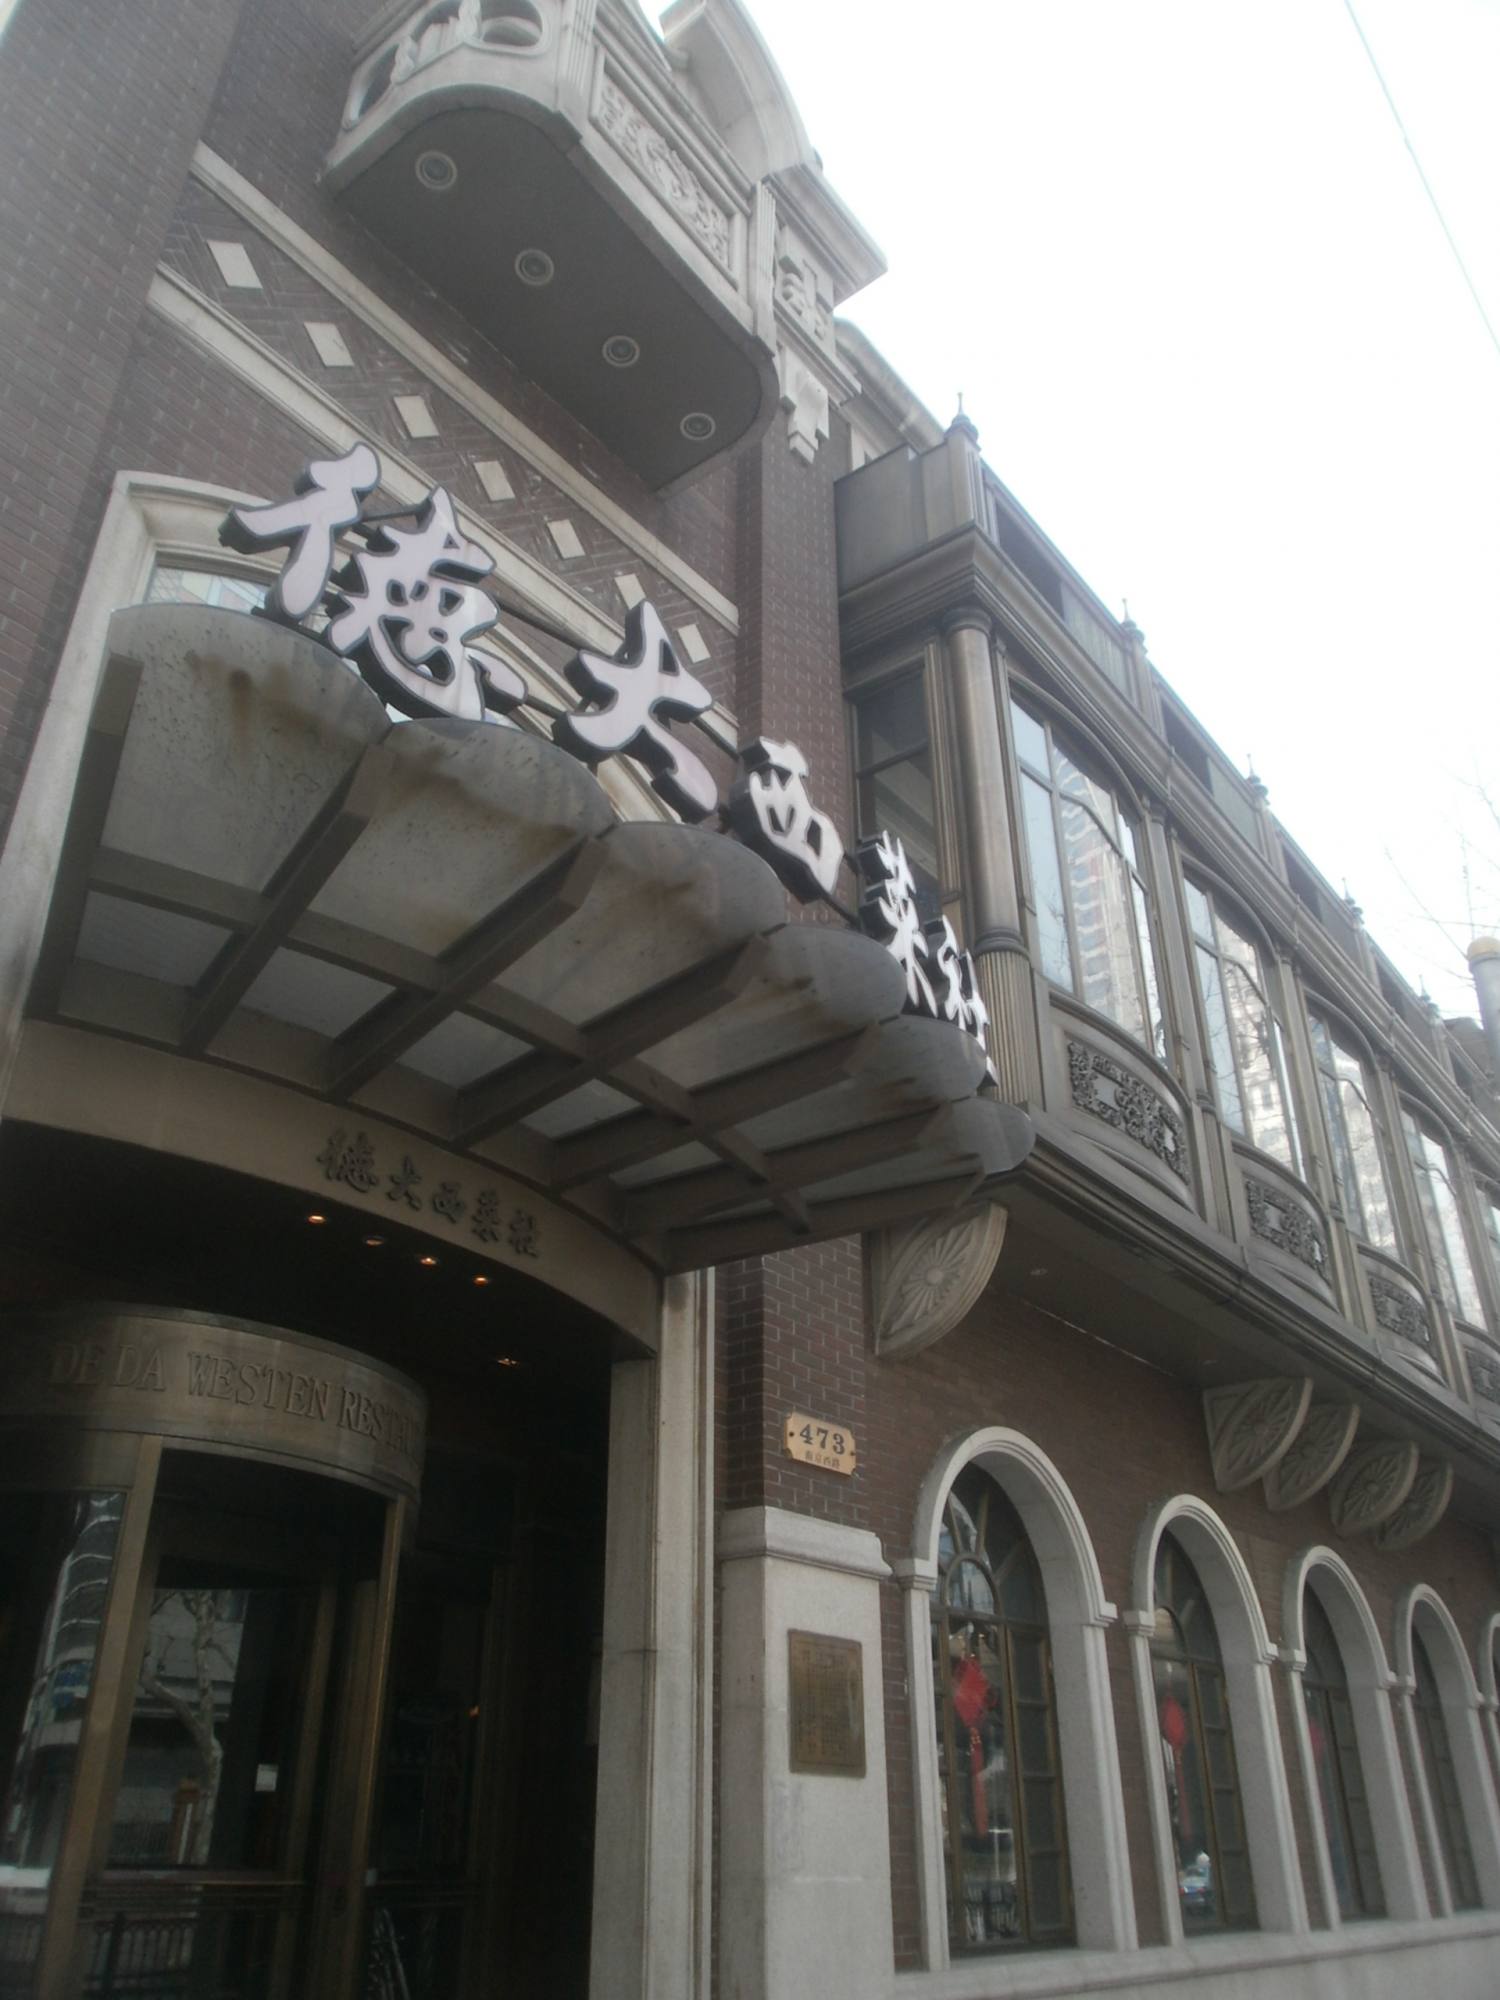 南京西路德大西餐馆图片